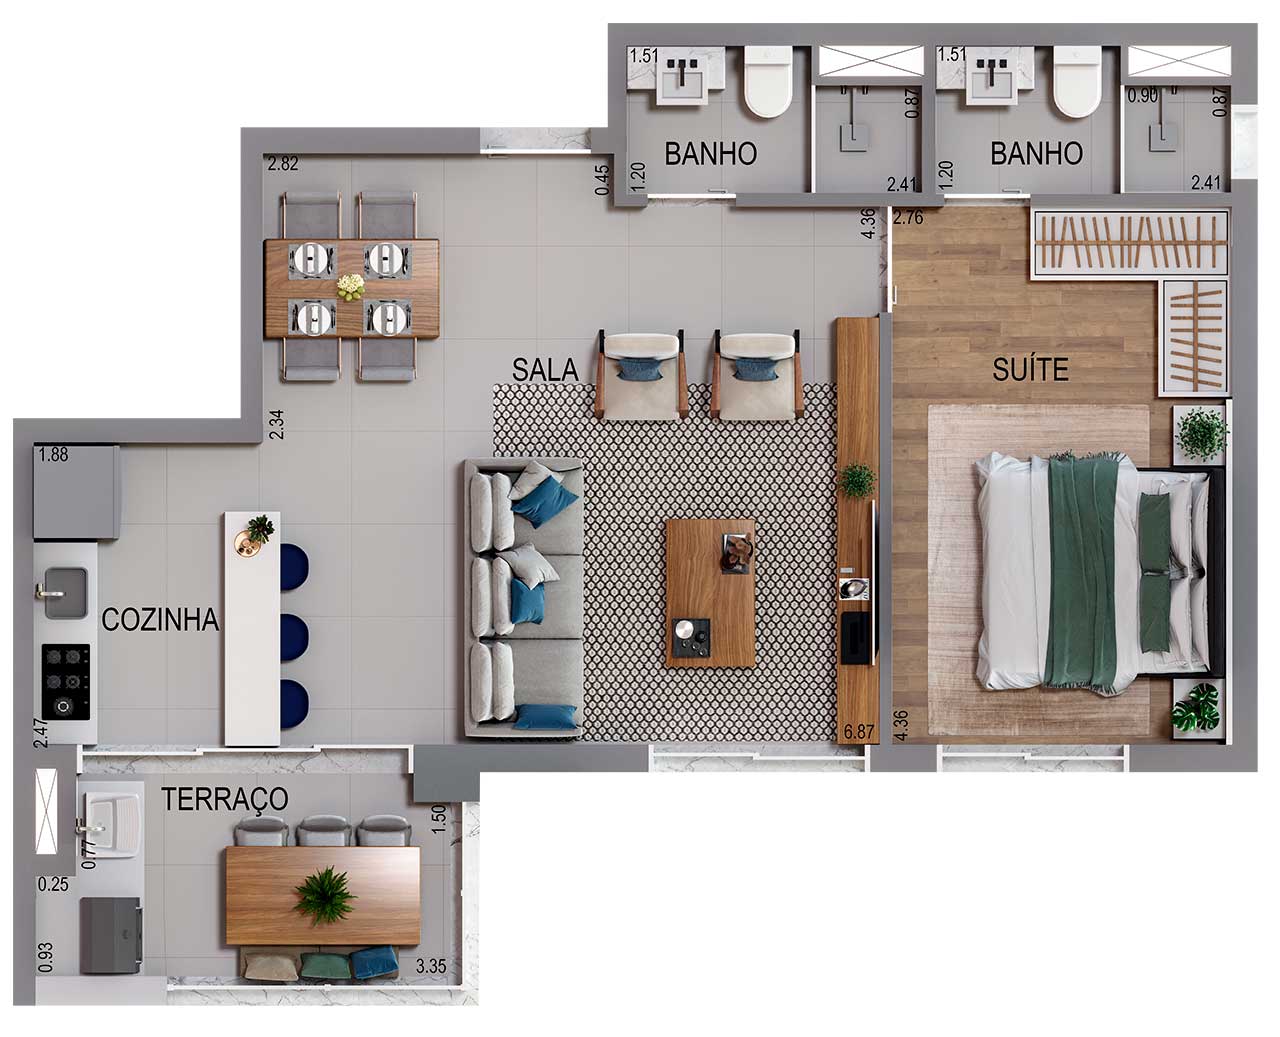 Planta 58m² - 2 Dormitórios, sala ampliada, 1 suíte e 2 vagas de garagem  - Acqua Park Barueri